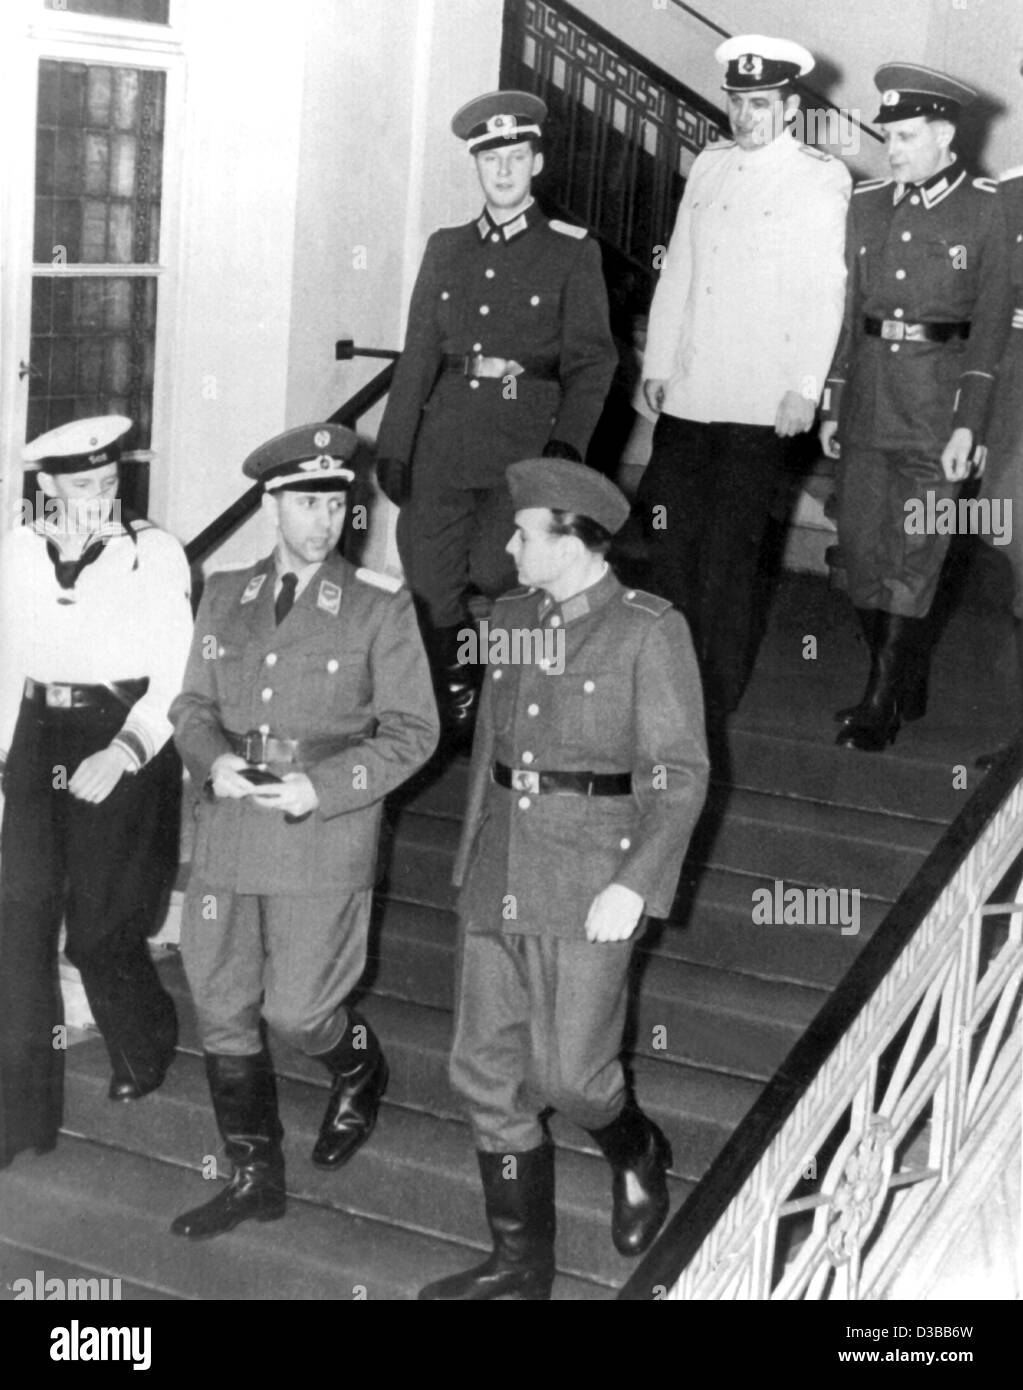 (Dpa-Dateien) - Soldaten der DDR Nationale Volksarmee (NVA) tragen die neuen Uniformen, DDR, 1956. Die Uniformen der Bodentruppen sind grau, die Air Force trägt blaue Uniformen und die Marine hat dunkelblauen Uniformen. Die Uniformen hatte der sowjetischen Ar ähnlich gewesen Stockfoto